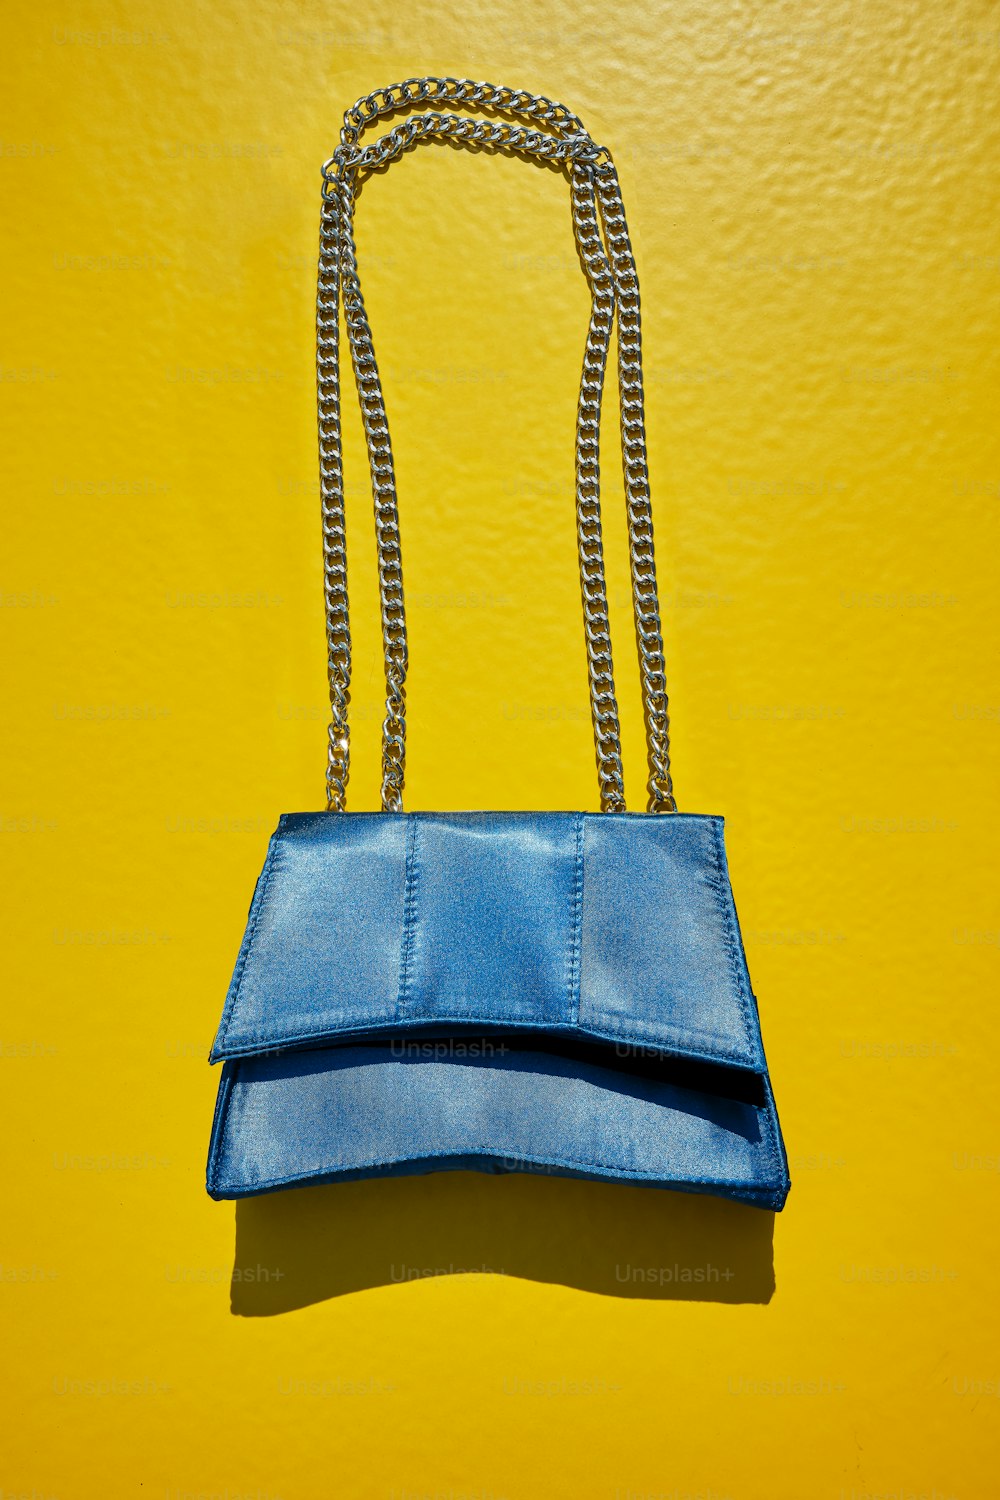 un sac à main bleu accroché à un mur jaune